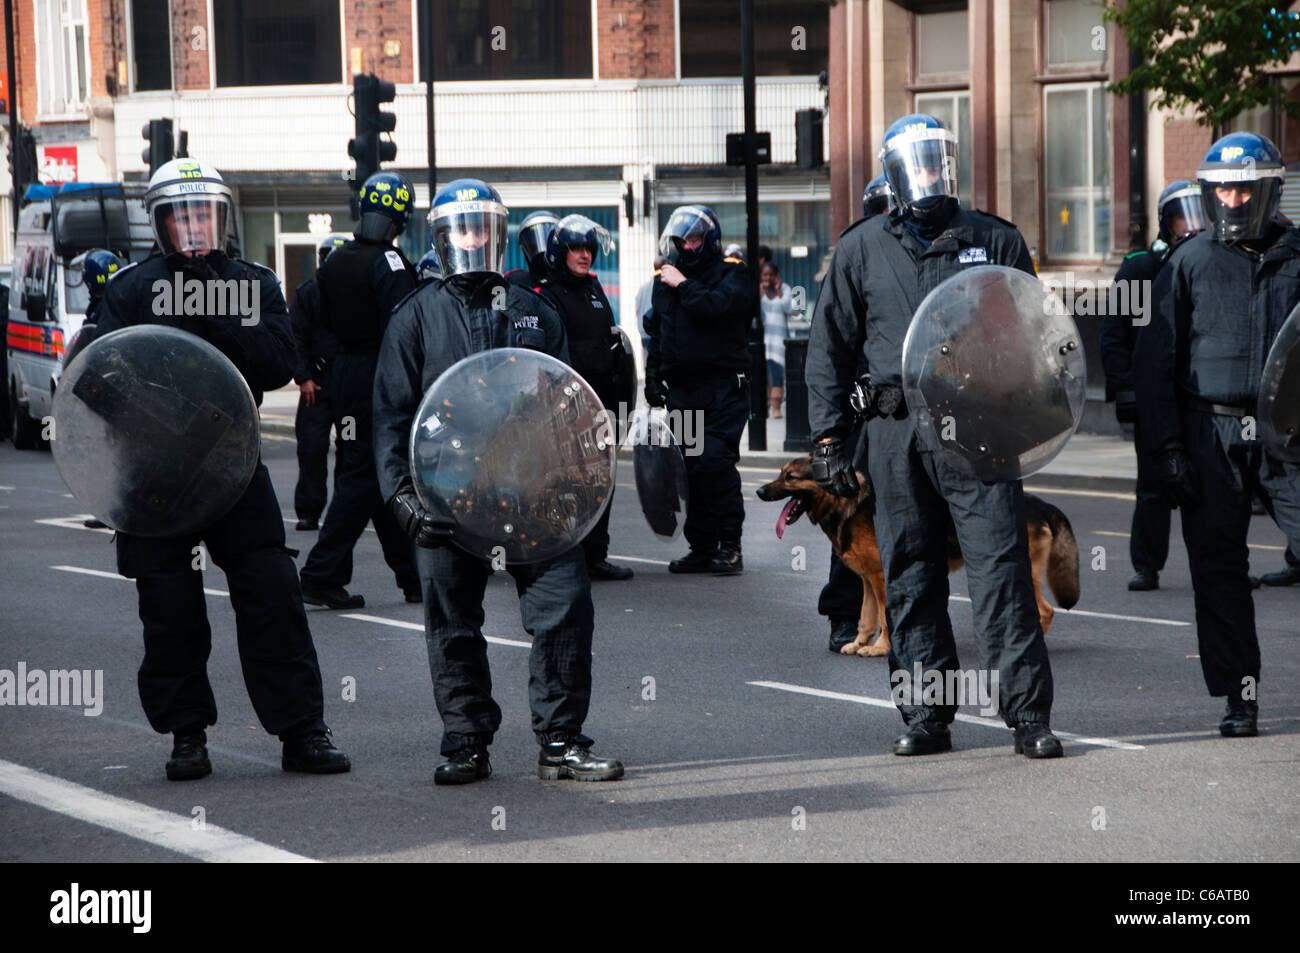 La polizia antisommossa con caschi e scudi antisommossa e un cane alsaziano sul Mare Street Hackney durante il prossimo 8 agosto 2011 riot Foto Stock